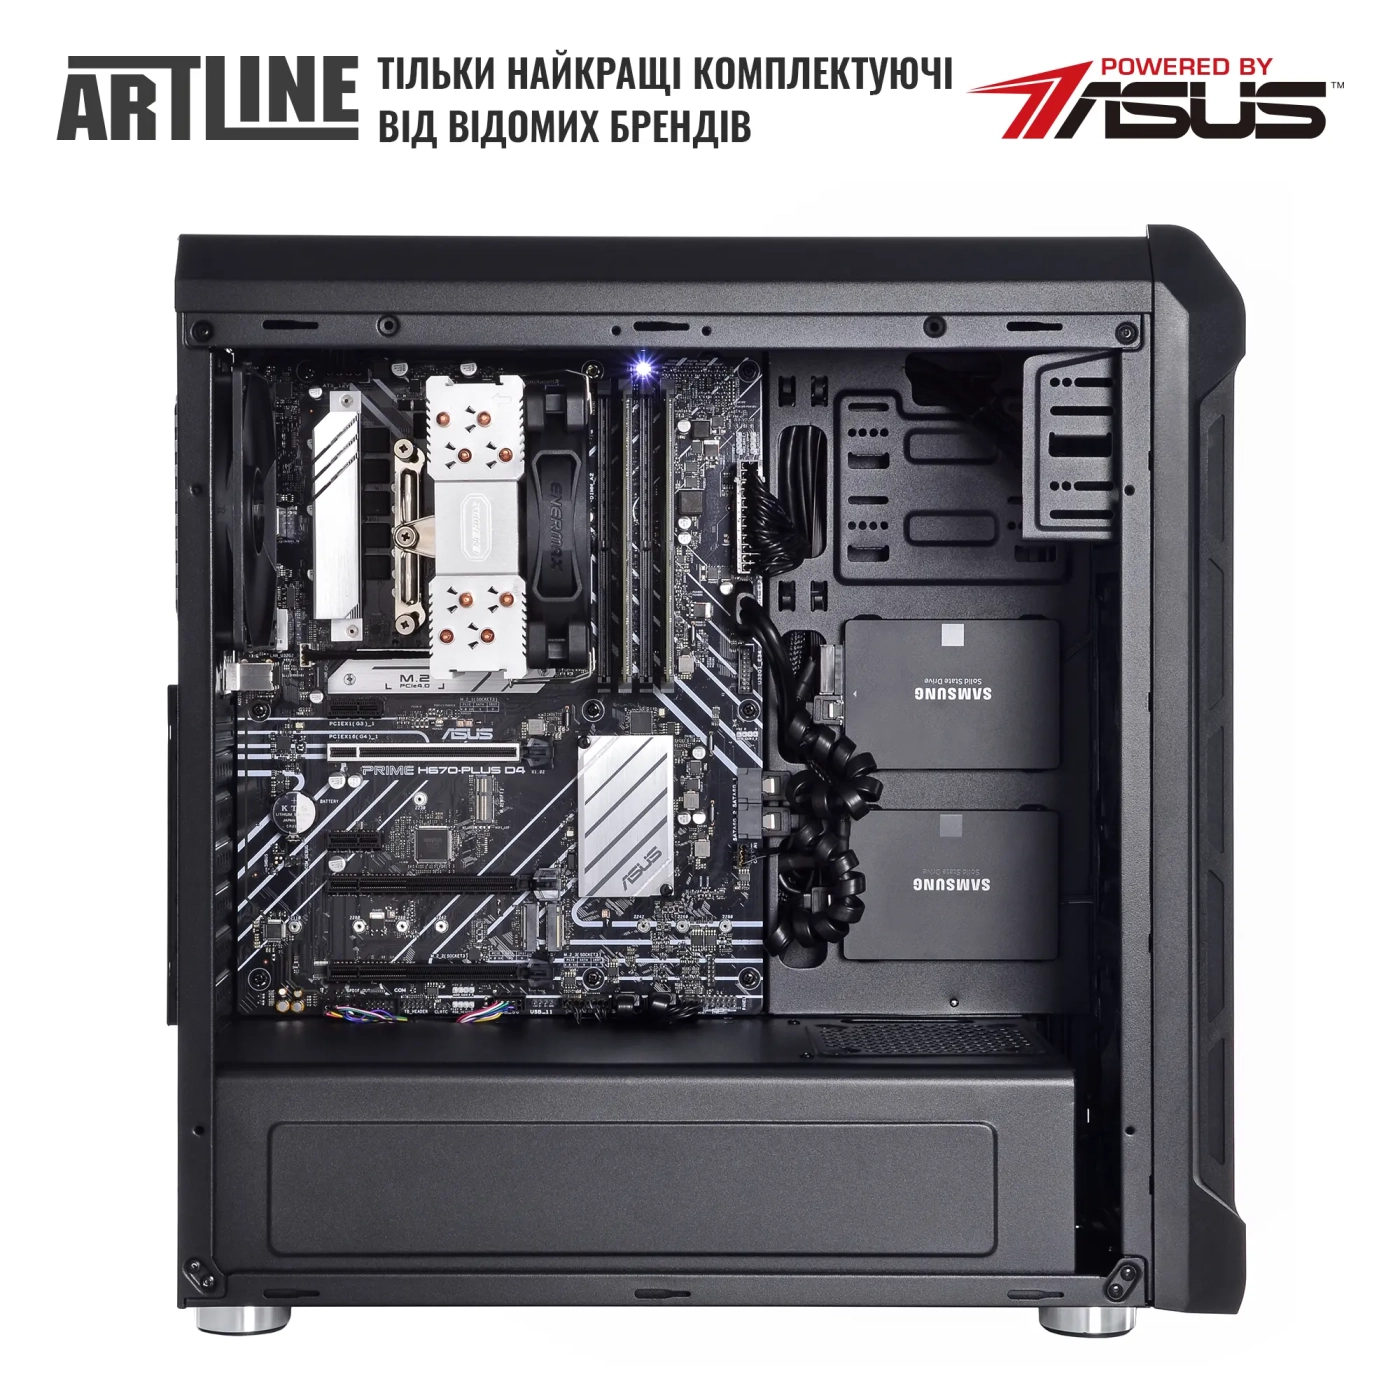 Купить Сервер ARTLINE Business T27 (T27v30) - фото 4